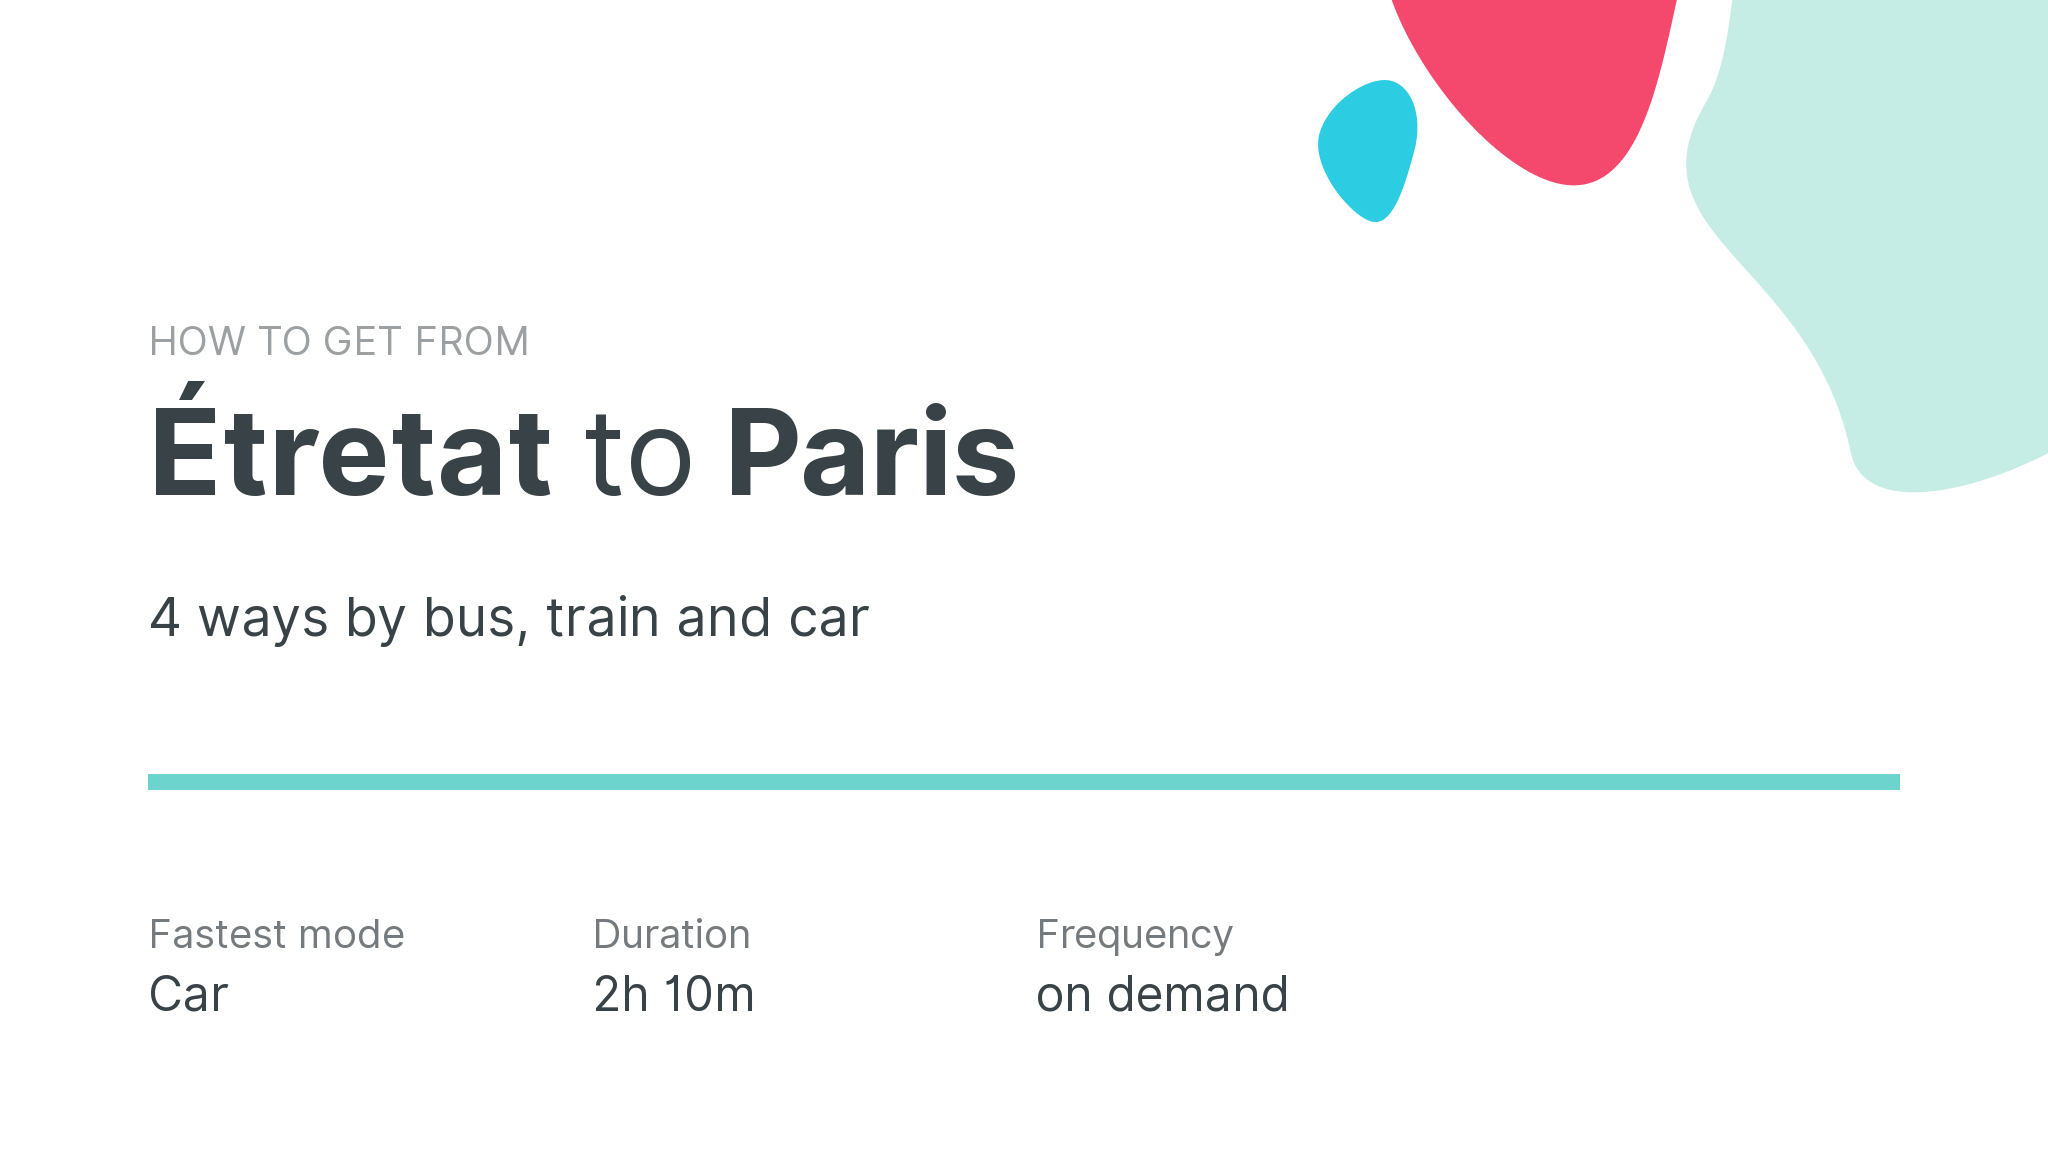 How do I get from Étretat to Paris